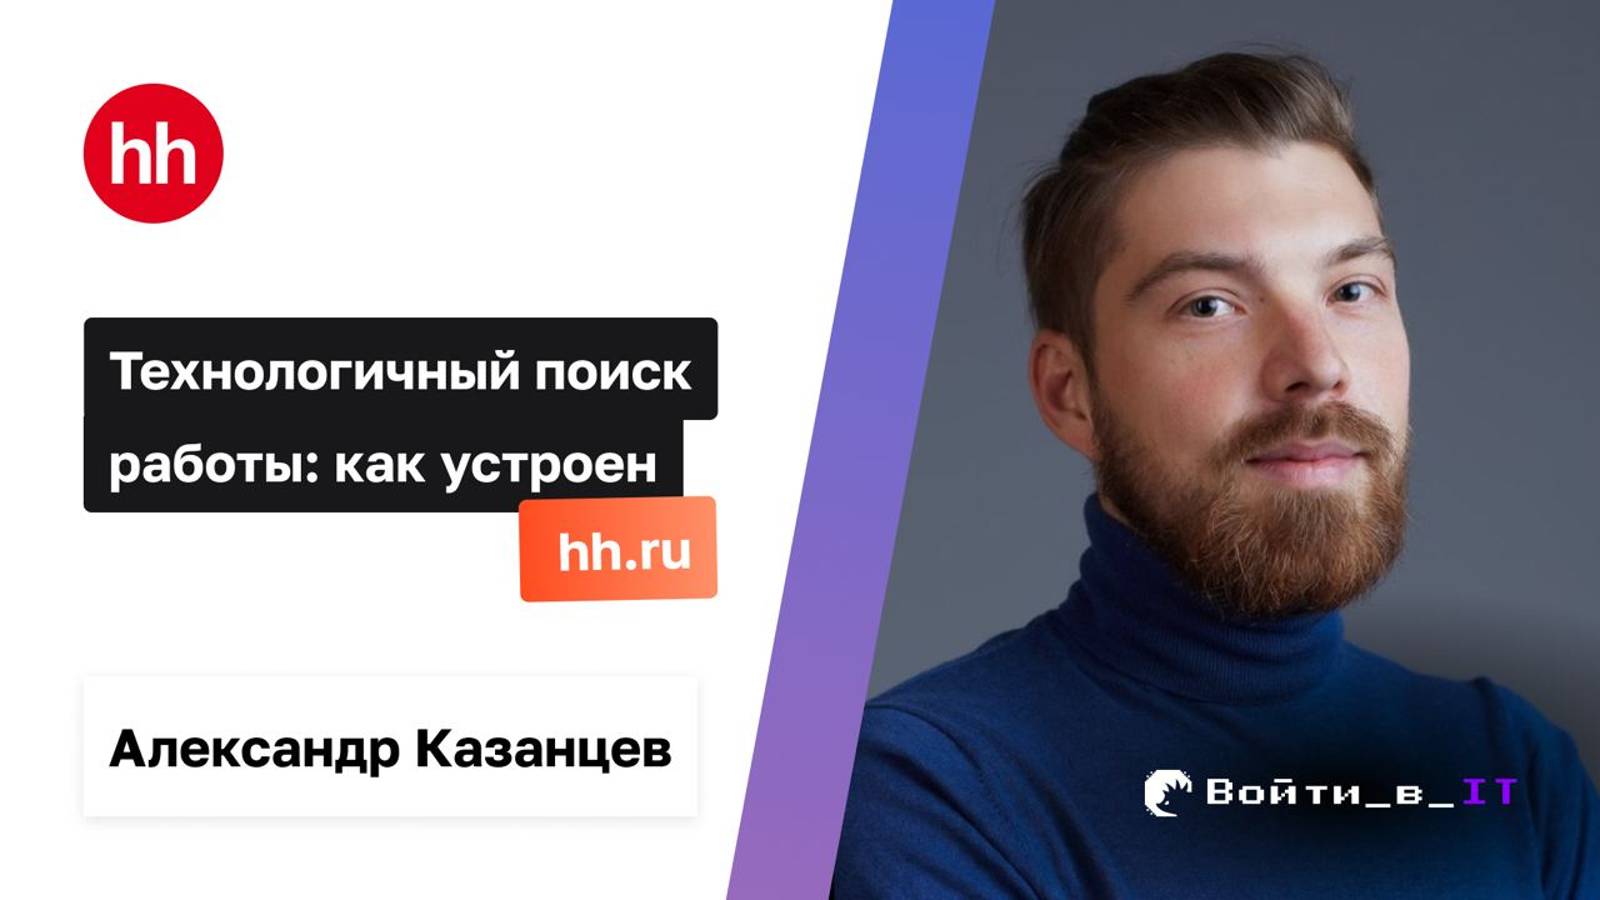 Технологичный поиск работы: Как устроен hh.ru | Александр Казанцев hh.ru